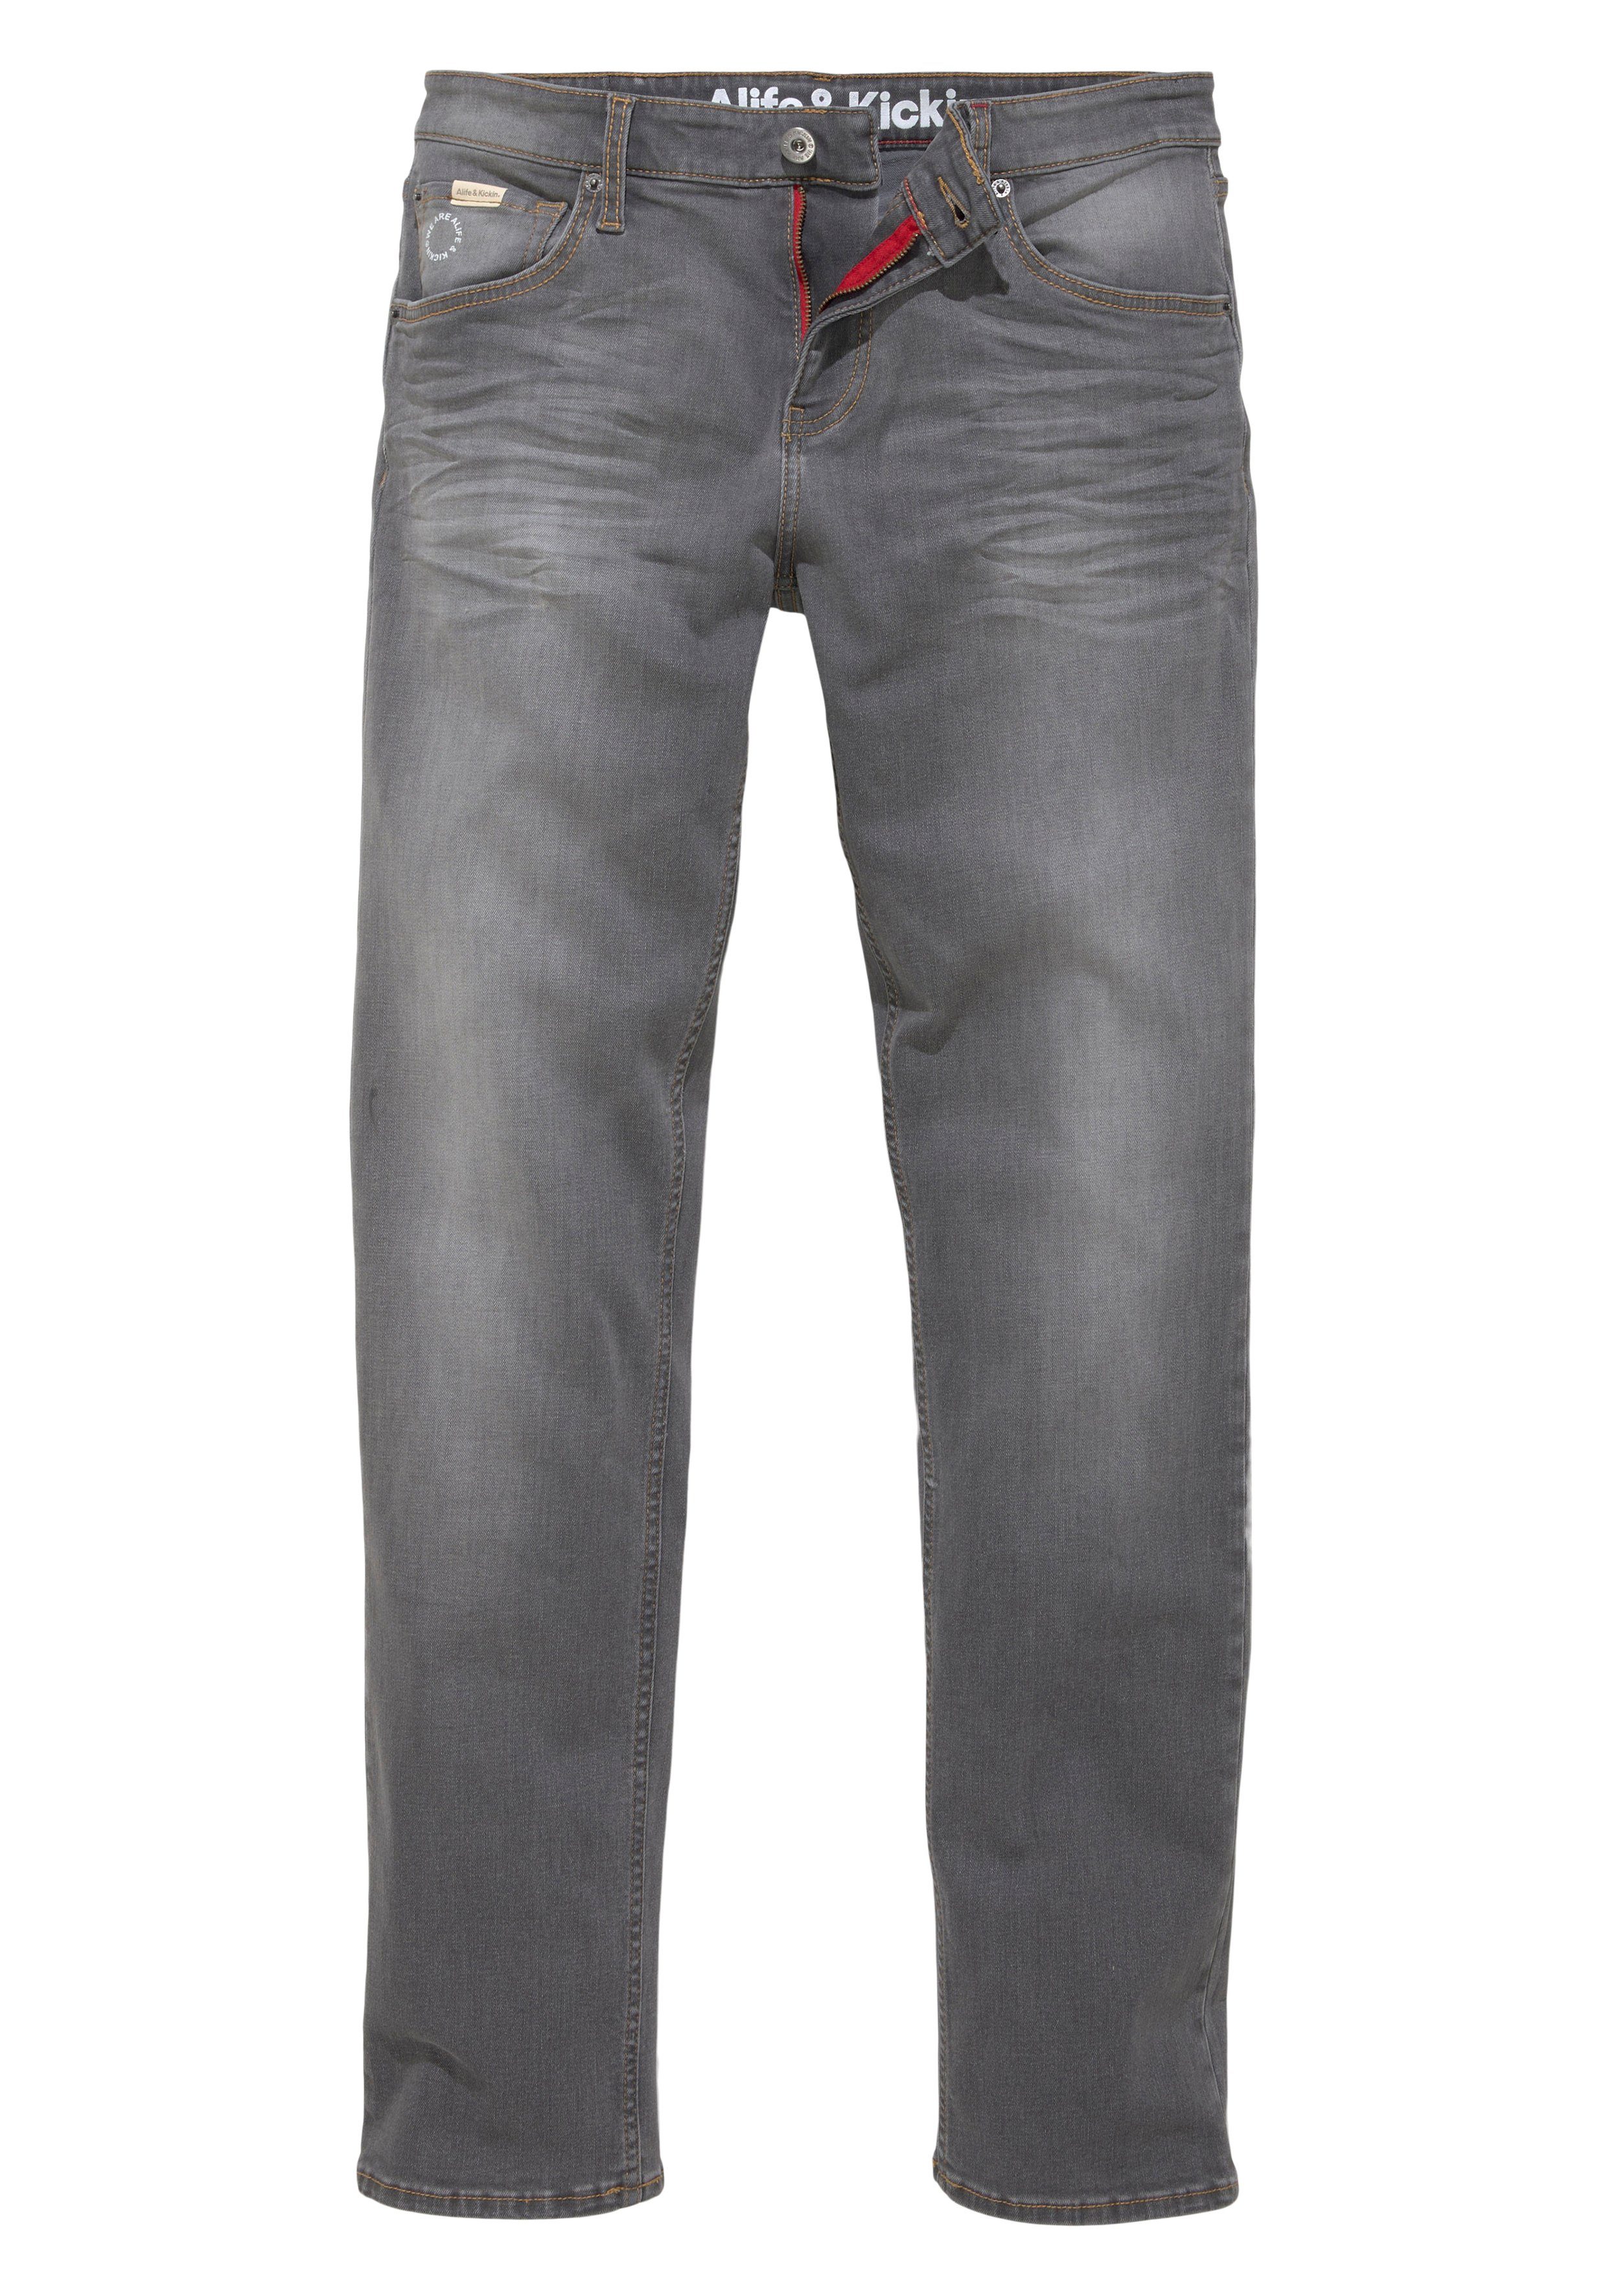 & Wash Ozon Alife wassersparende durch Produktion Ökologische, AlanAK grey dark Straight-Jeans Kickin